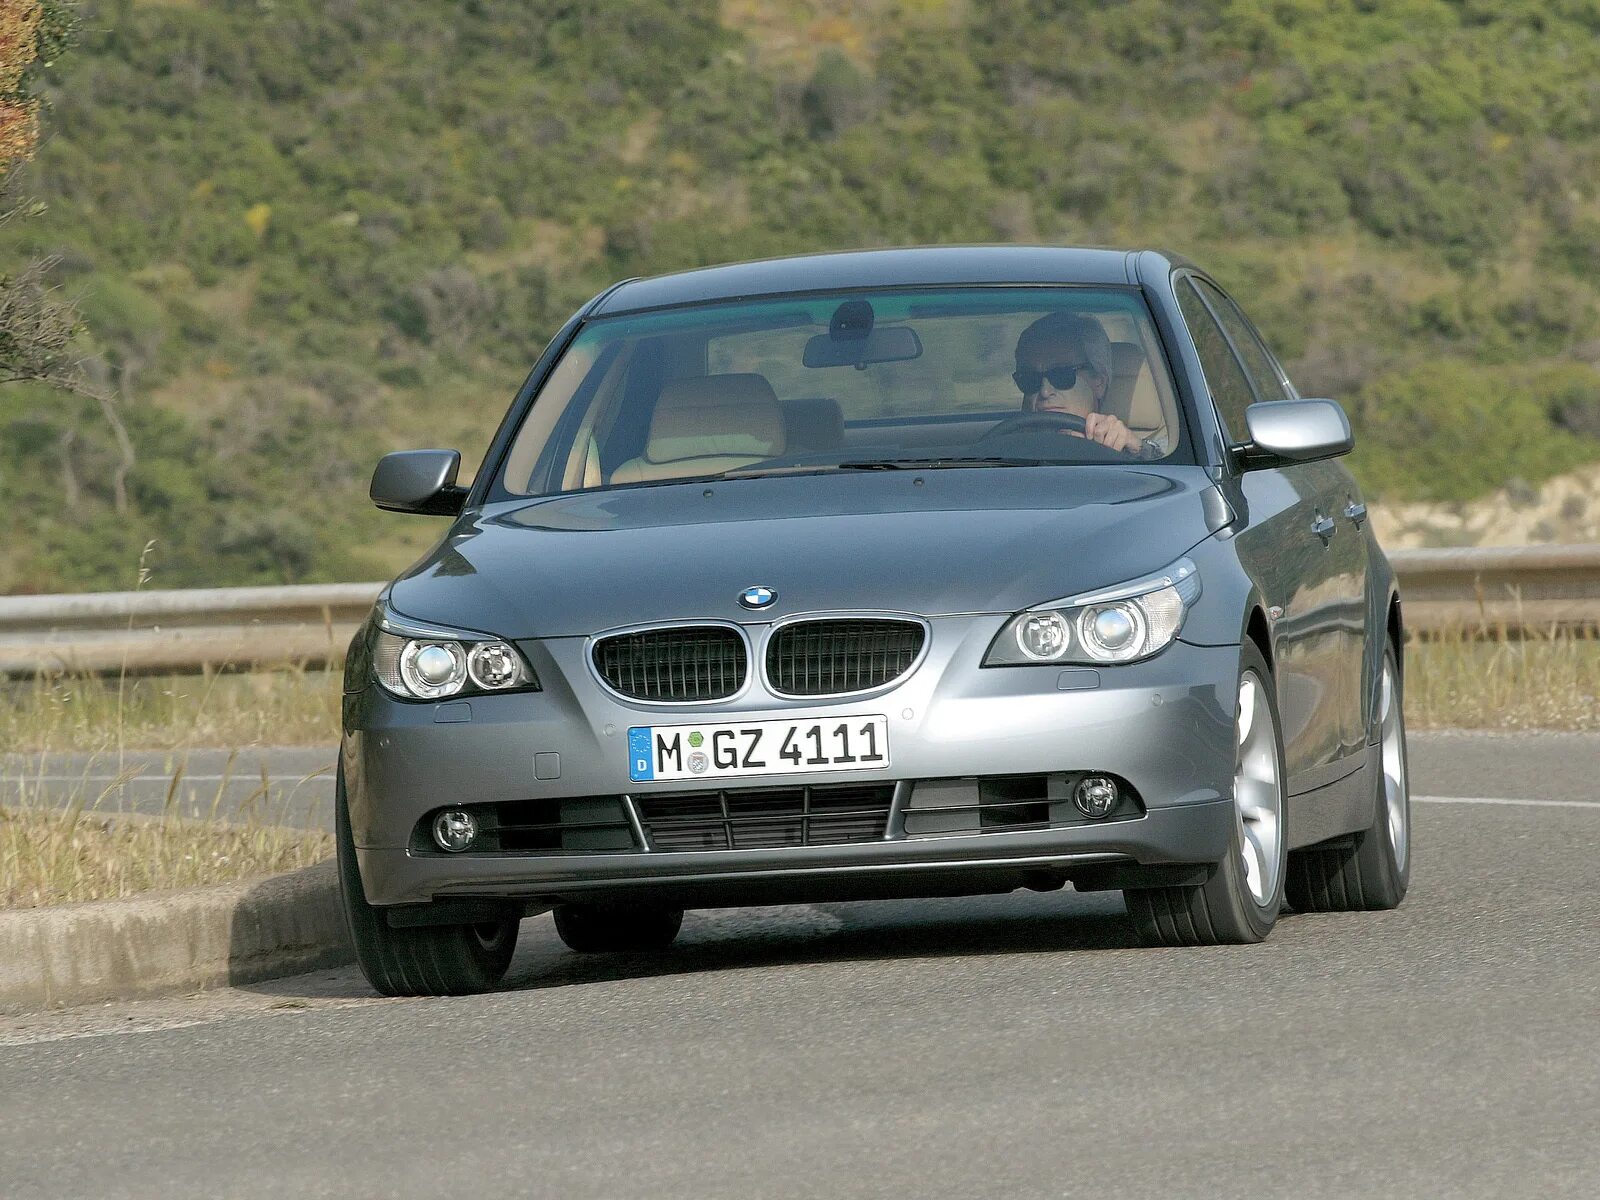 BMW 5 e60 2004. BMW 5 e60 2003. BMW 5 e60 530d. BMW 5 Series e60 2003. 5 series e60